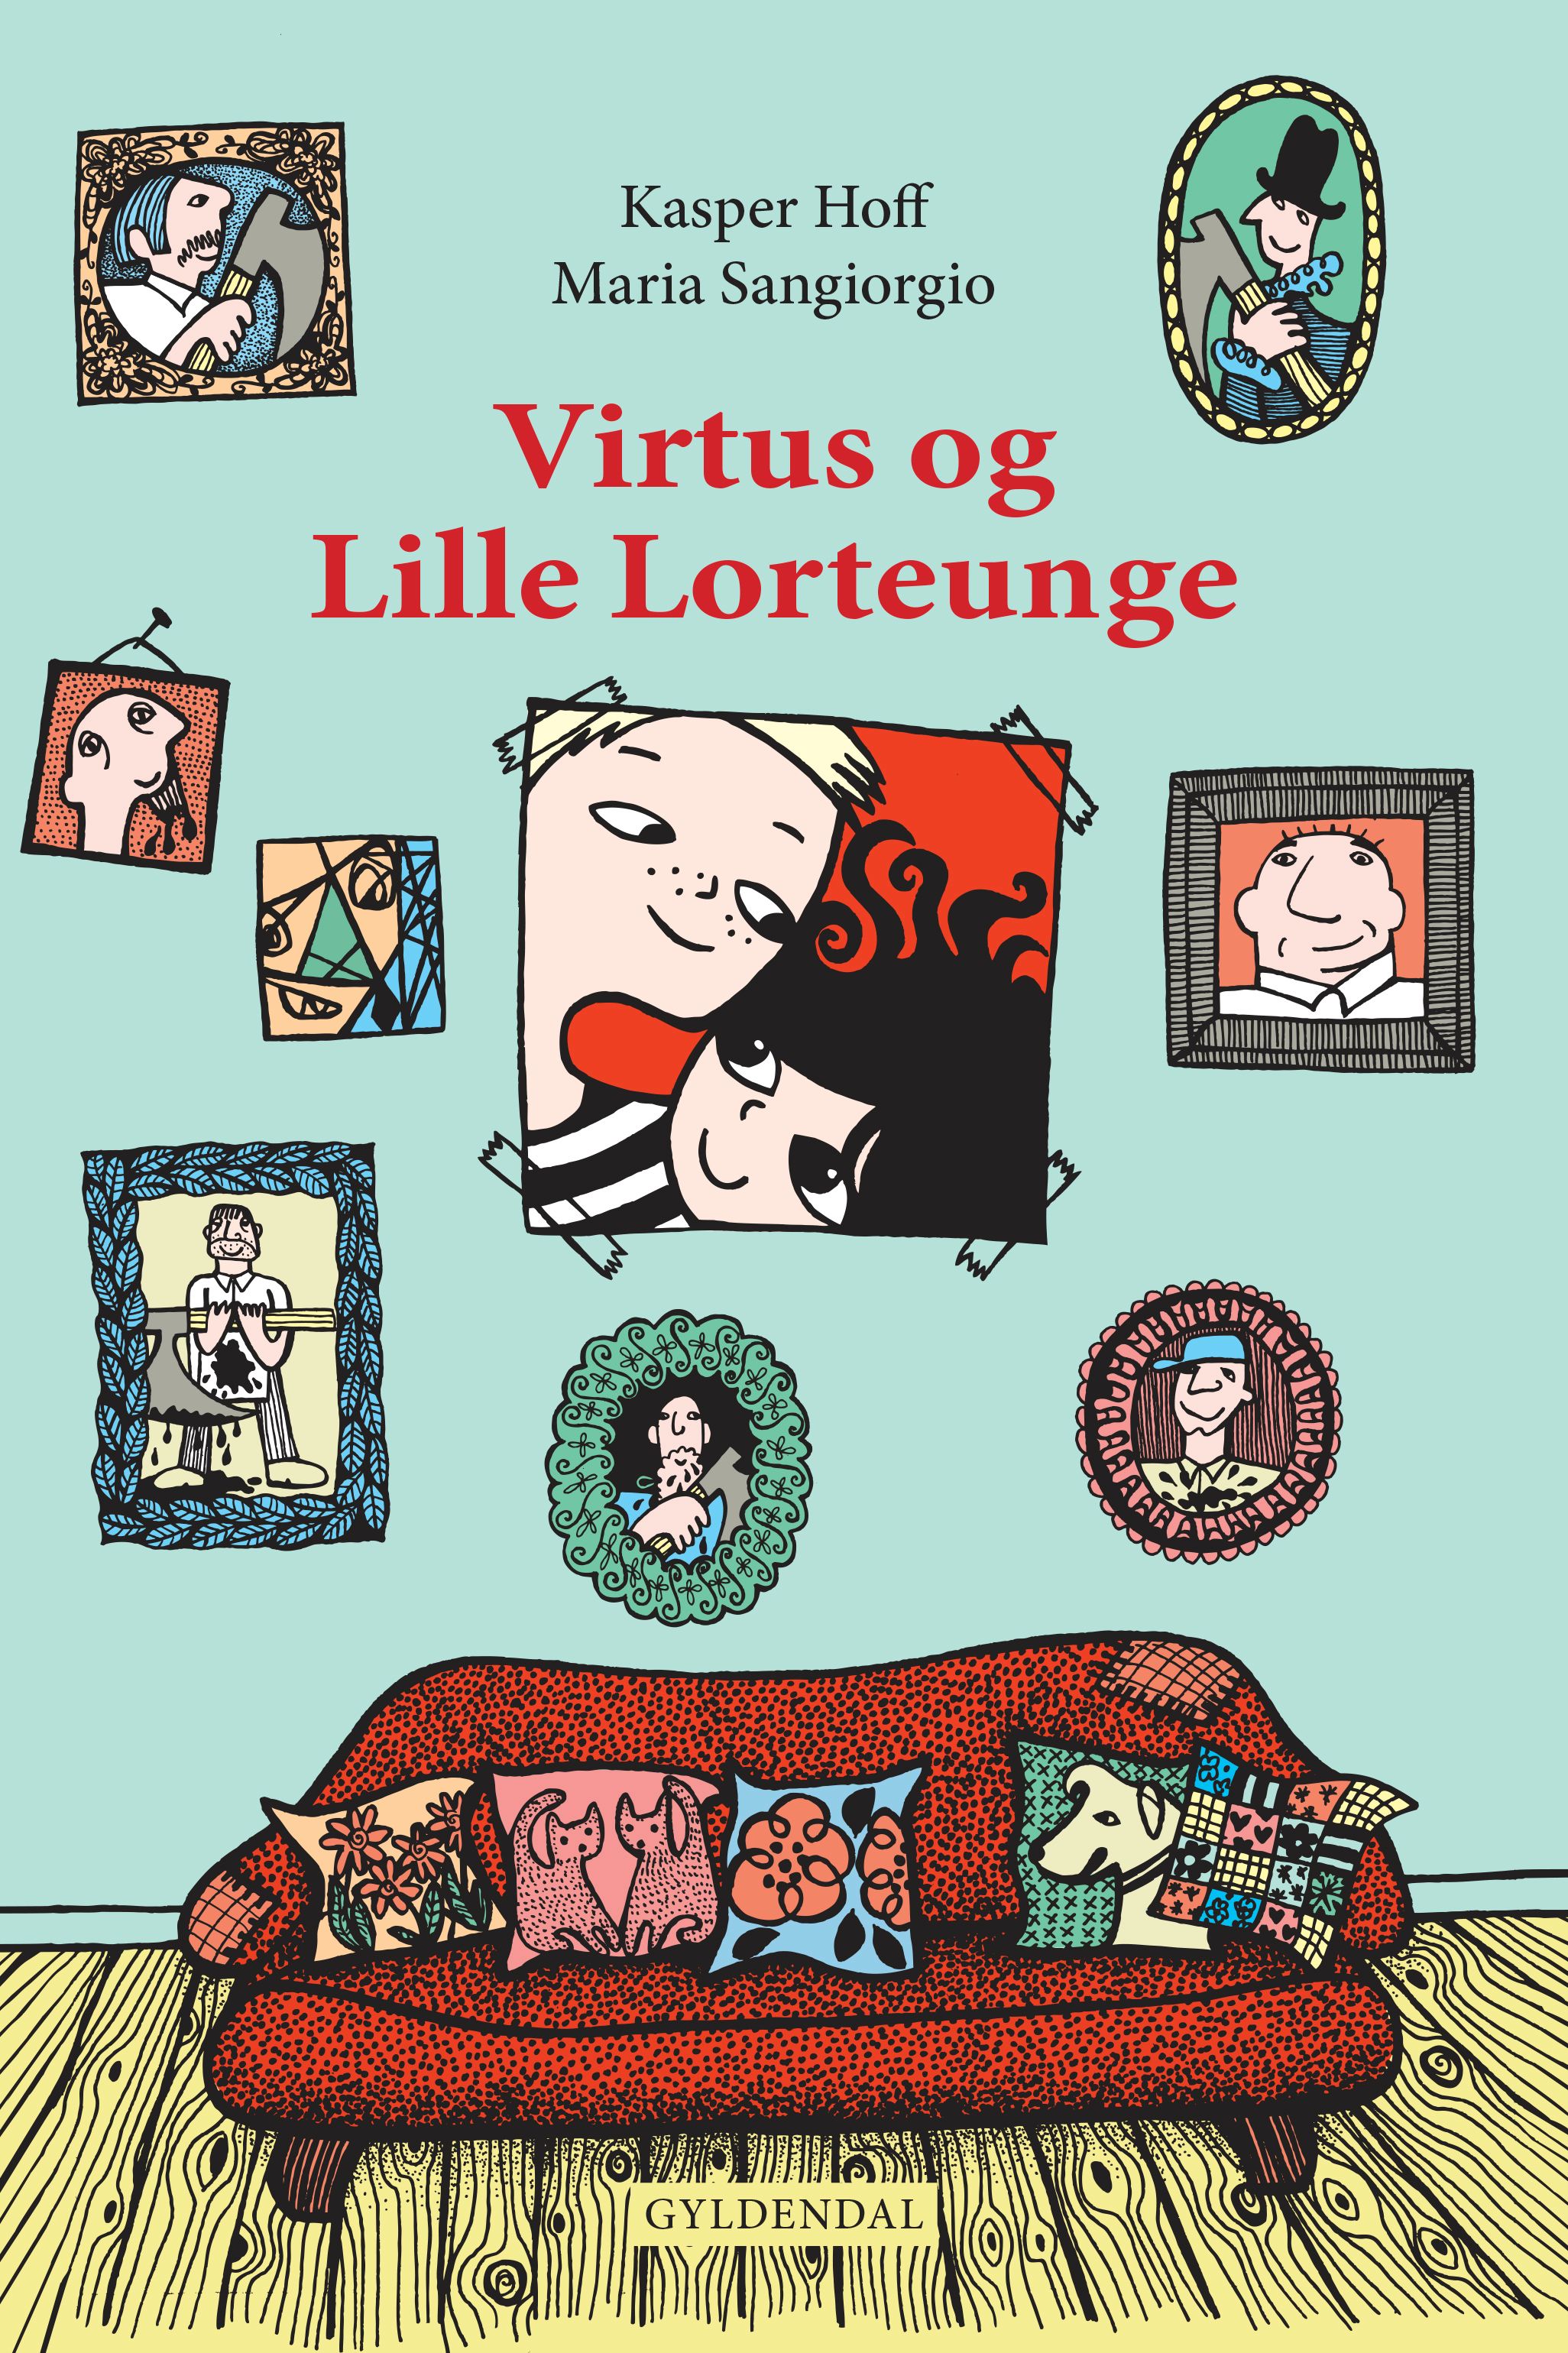 Virtus og Lille Lorteunge, e-bog af Kasper Hoff